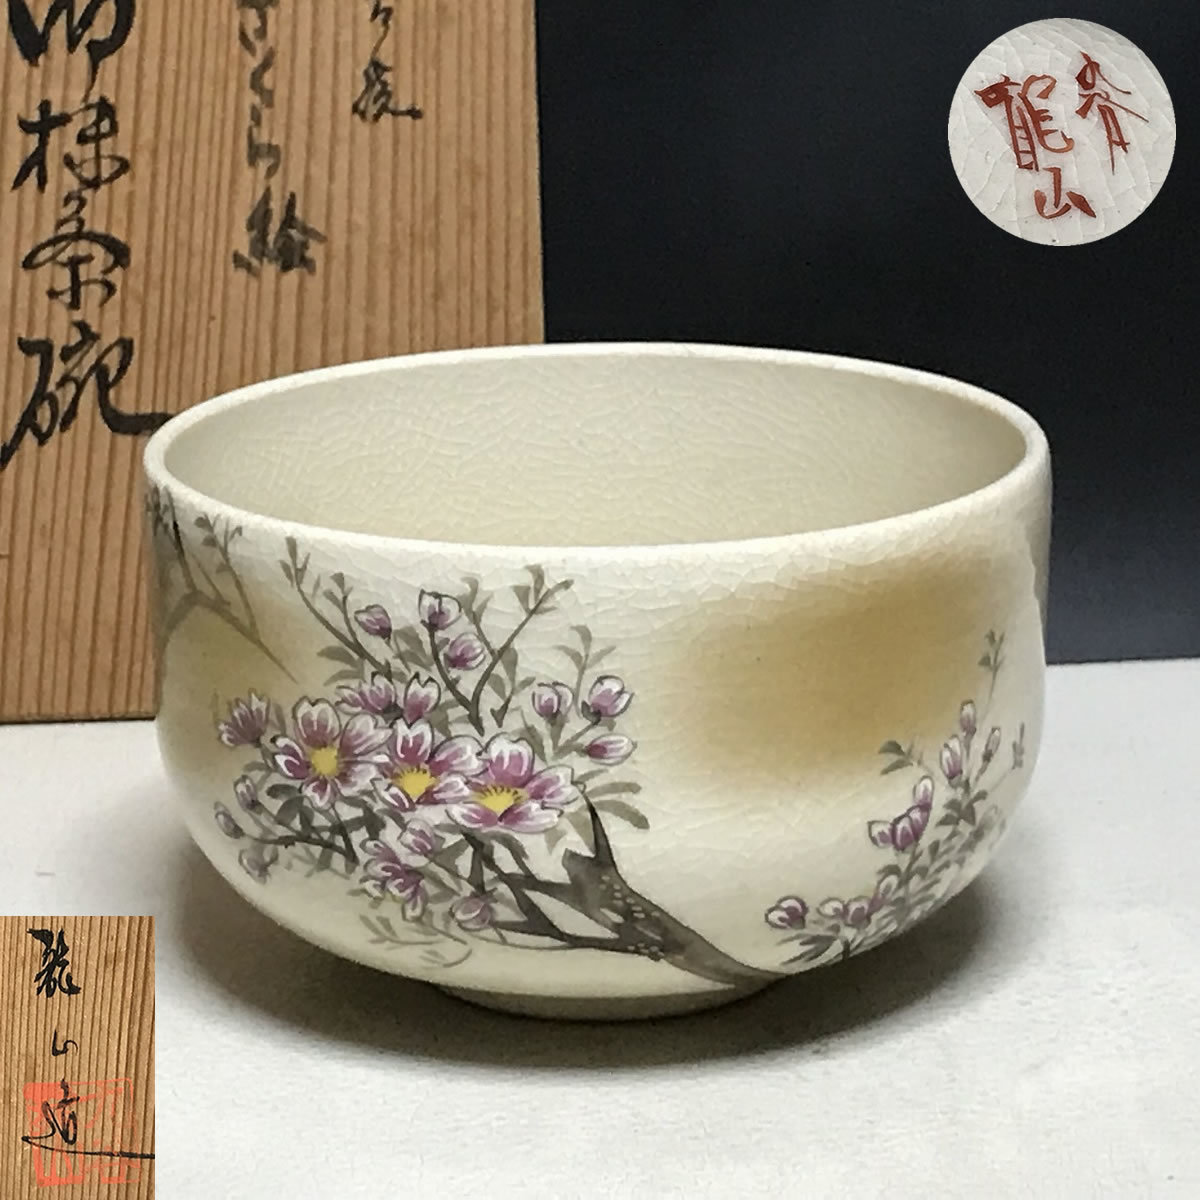 ウィングトッポギ九谷焼 抹茶碗 青銀彩 陶器 茶器 茶道具 日本製